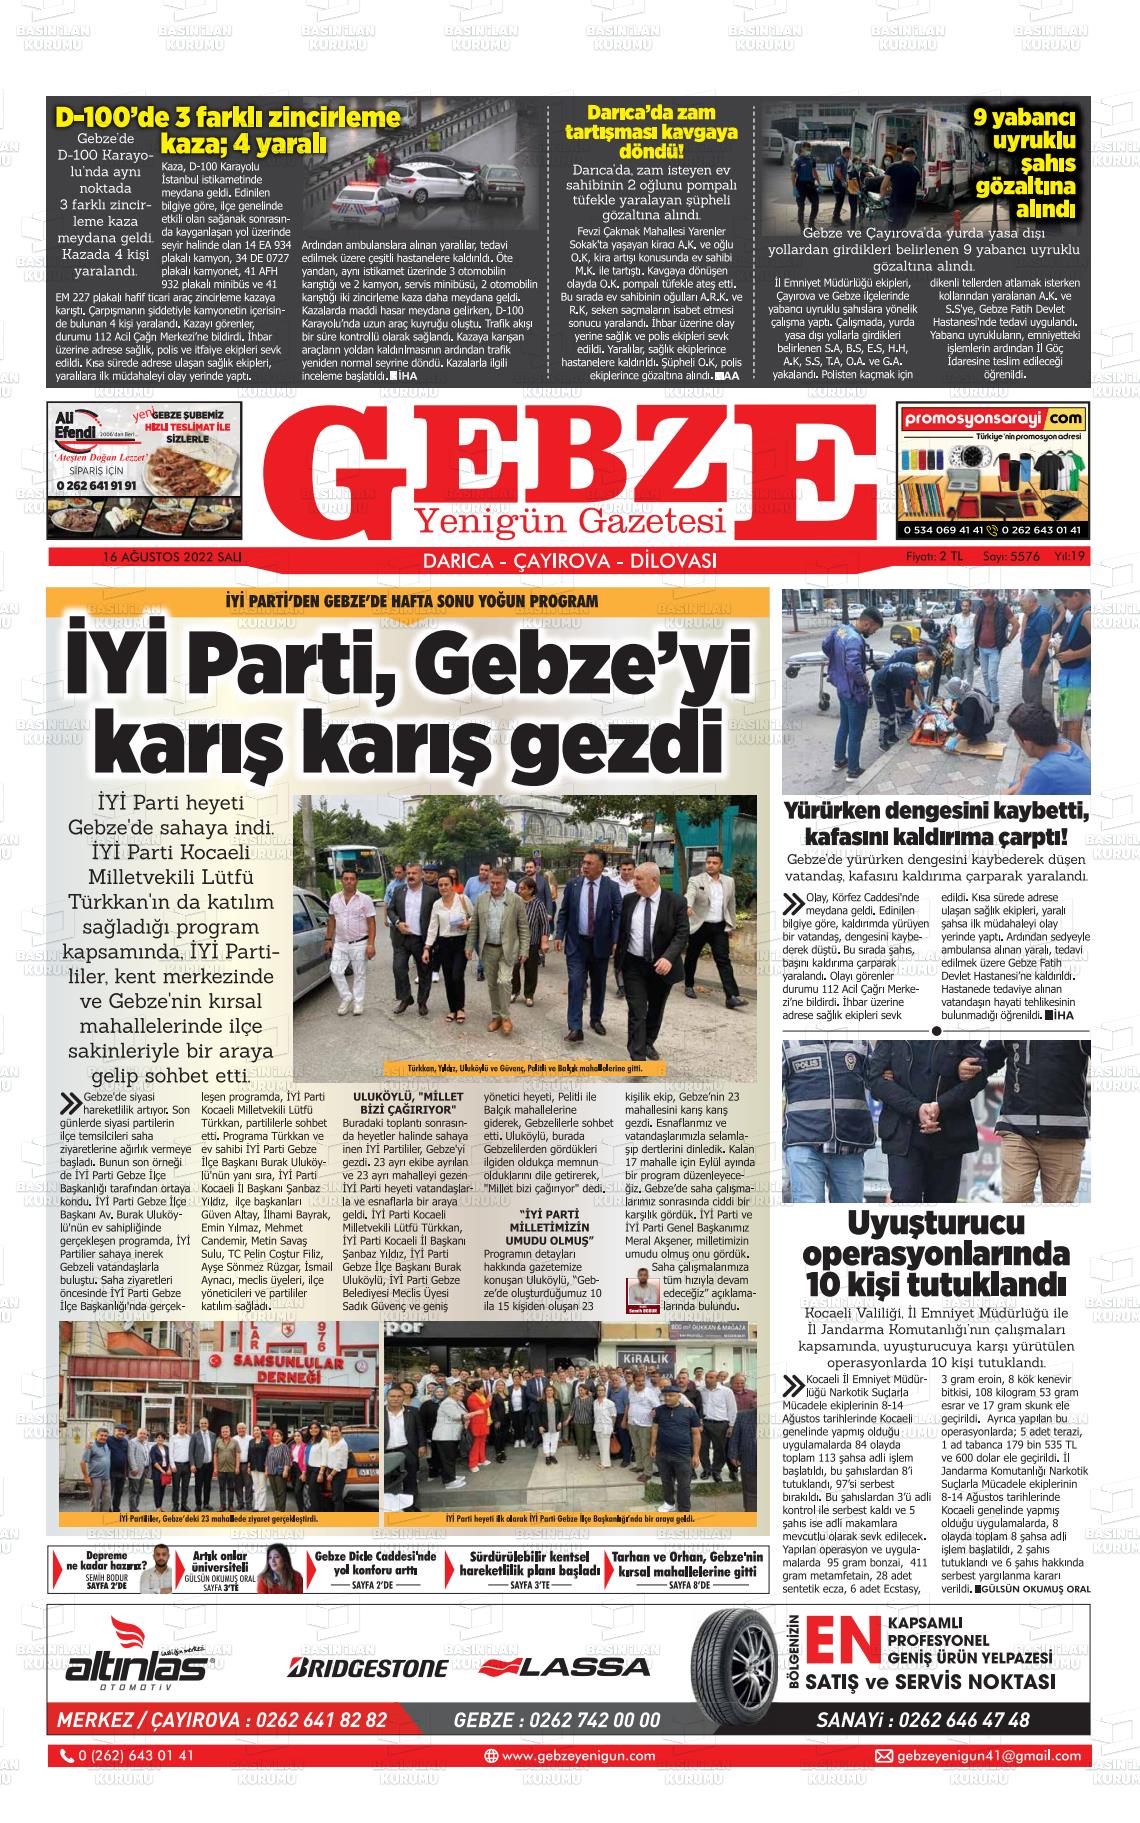 16 Ağustos 2022 Gebze Yenigün Gazete Manşeti